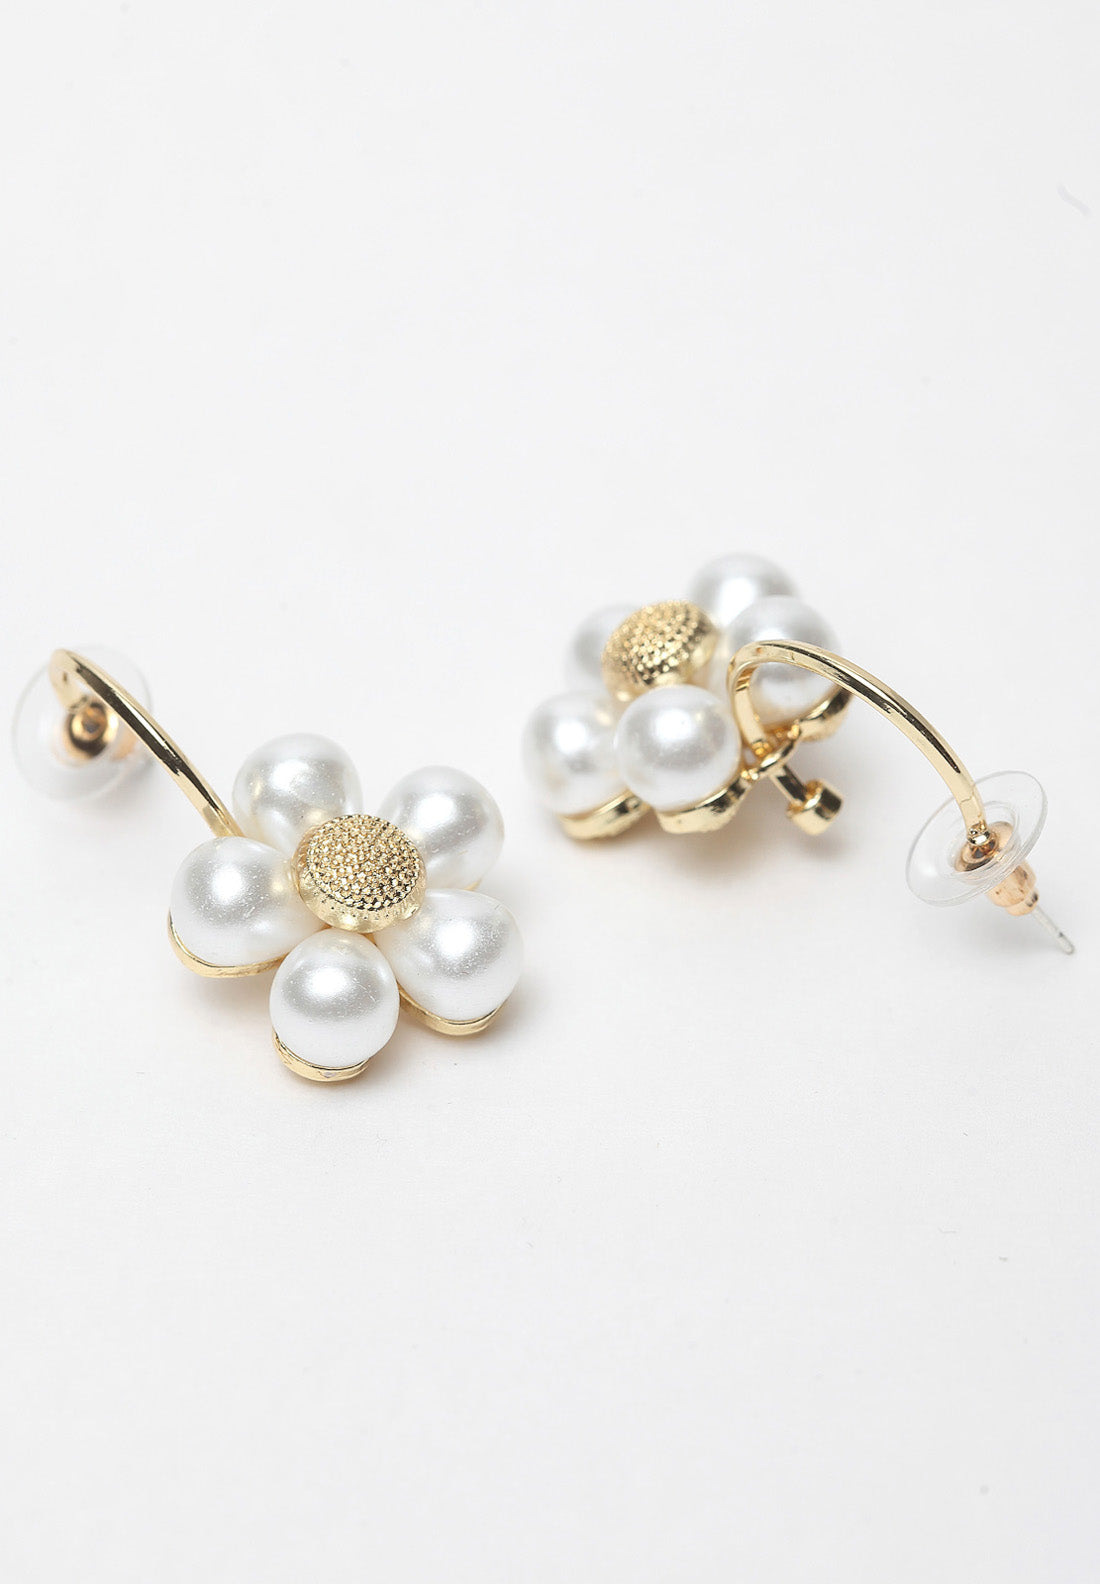 Boucles d'oreilles pendantes dorées à perles florales